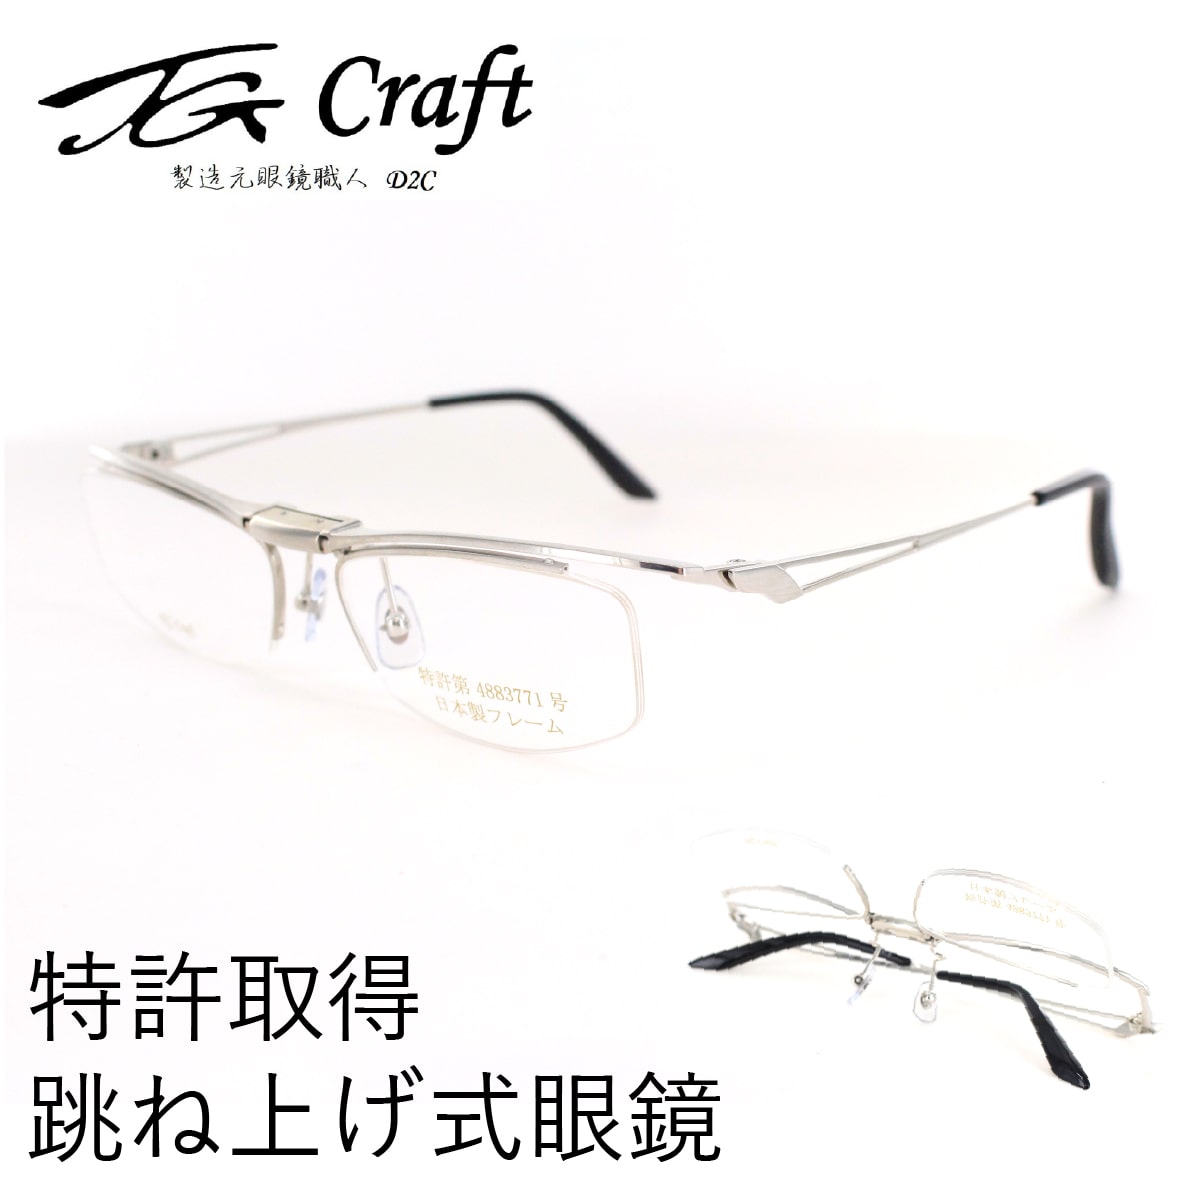 跳ね上げ式眼鏡 TG Craft ティージークラフト メガネ 度付き Falcon 跳ね上げ 日本製 ベータチタン ブロー 特許取得 単式 メンズ レディース 送料無料 母の日